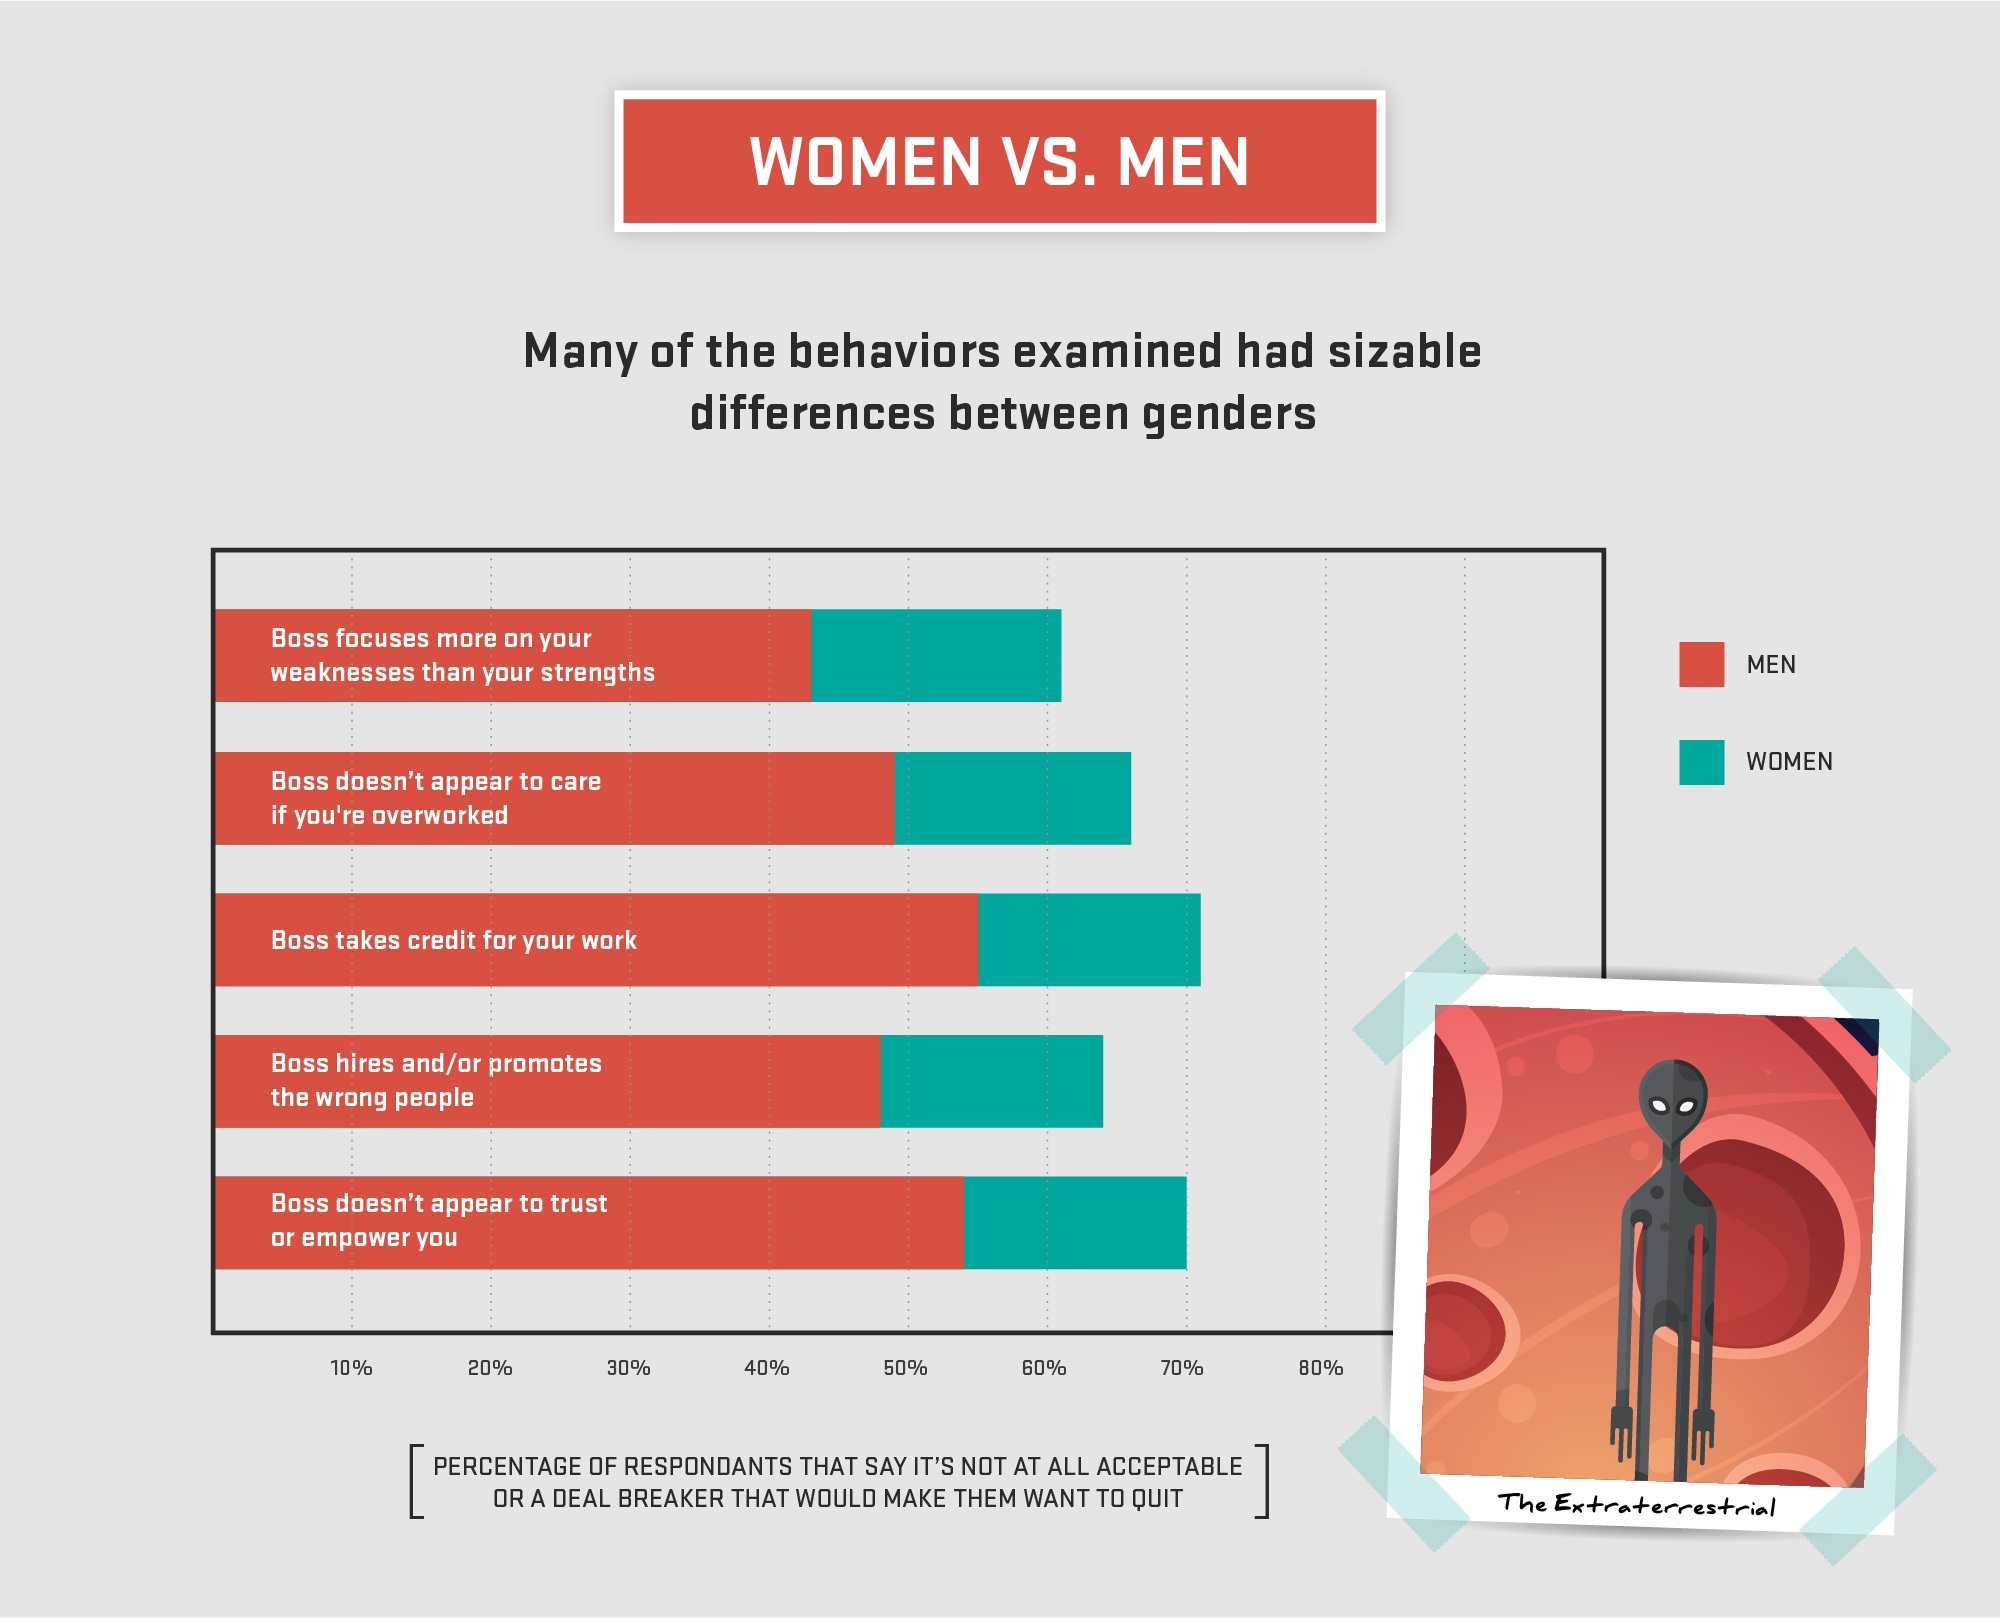 men vs women workplace behaviors